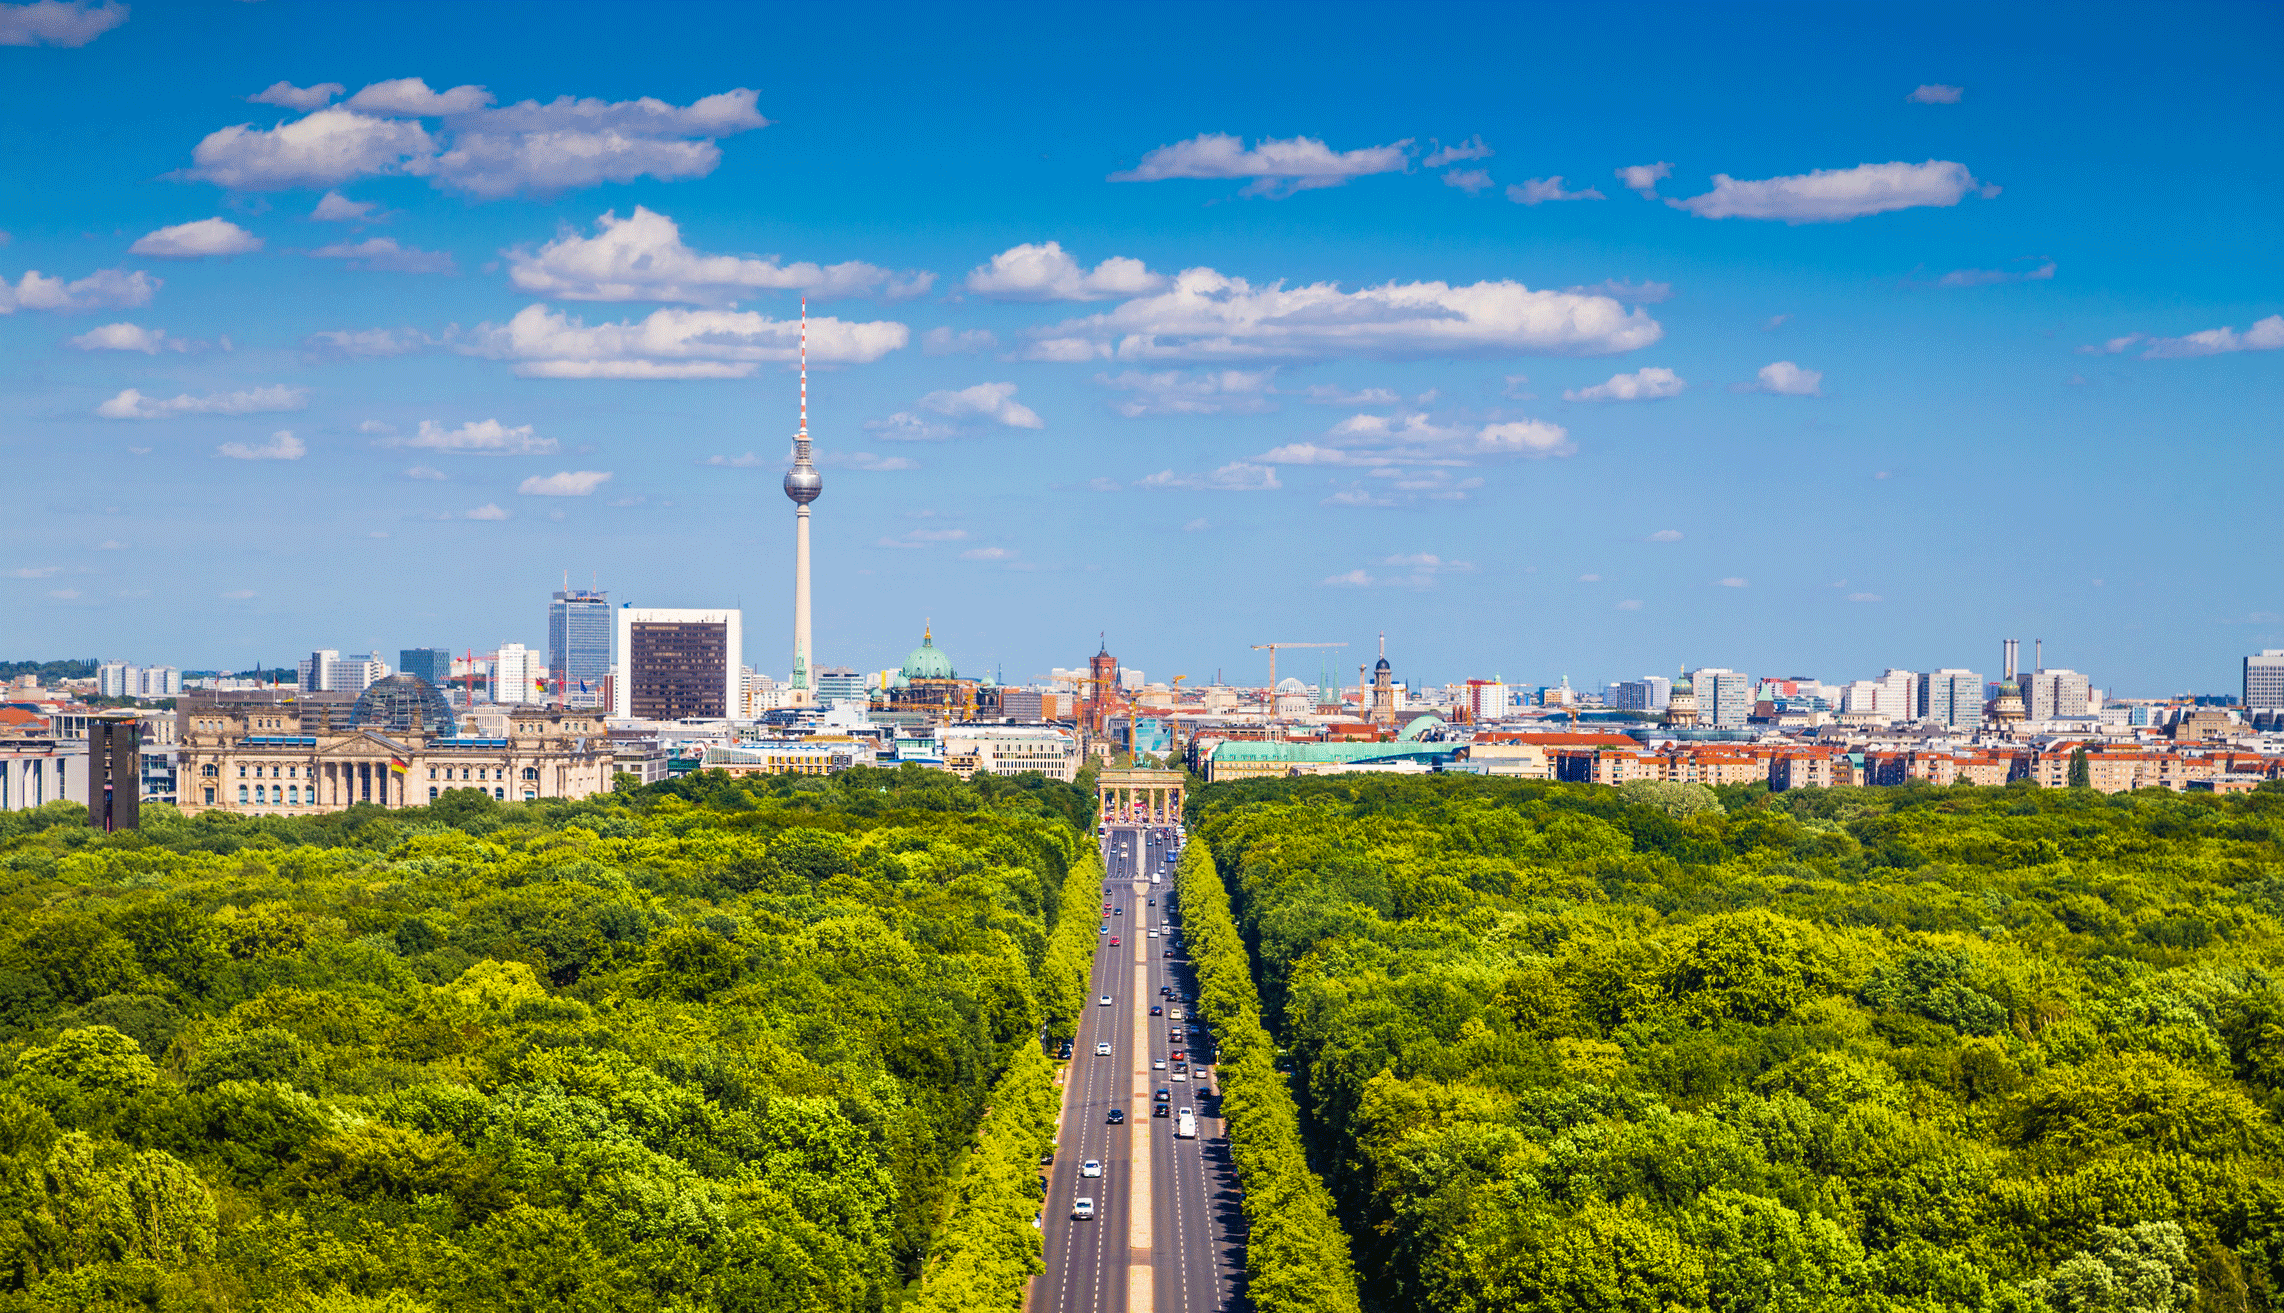 Berlin over Tiergarten Park